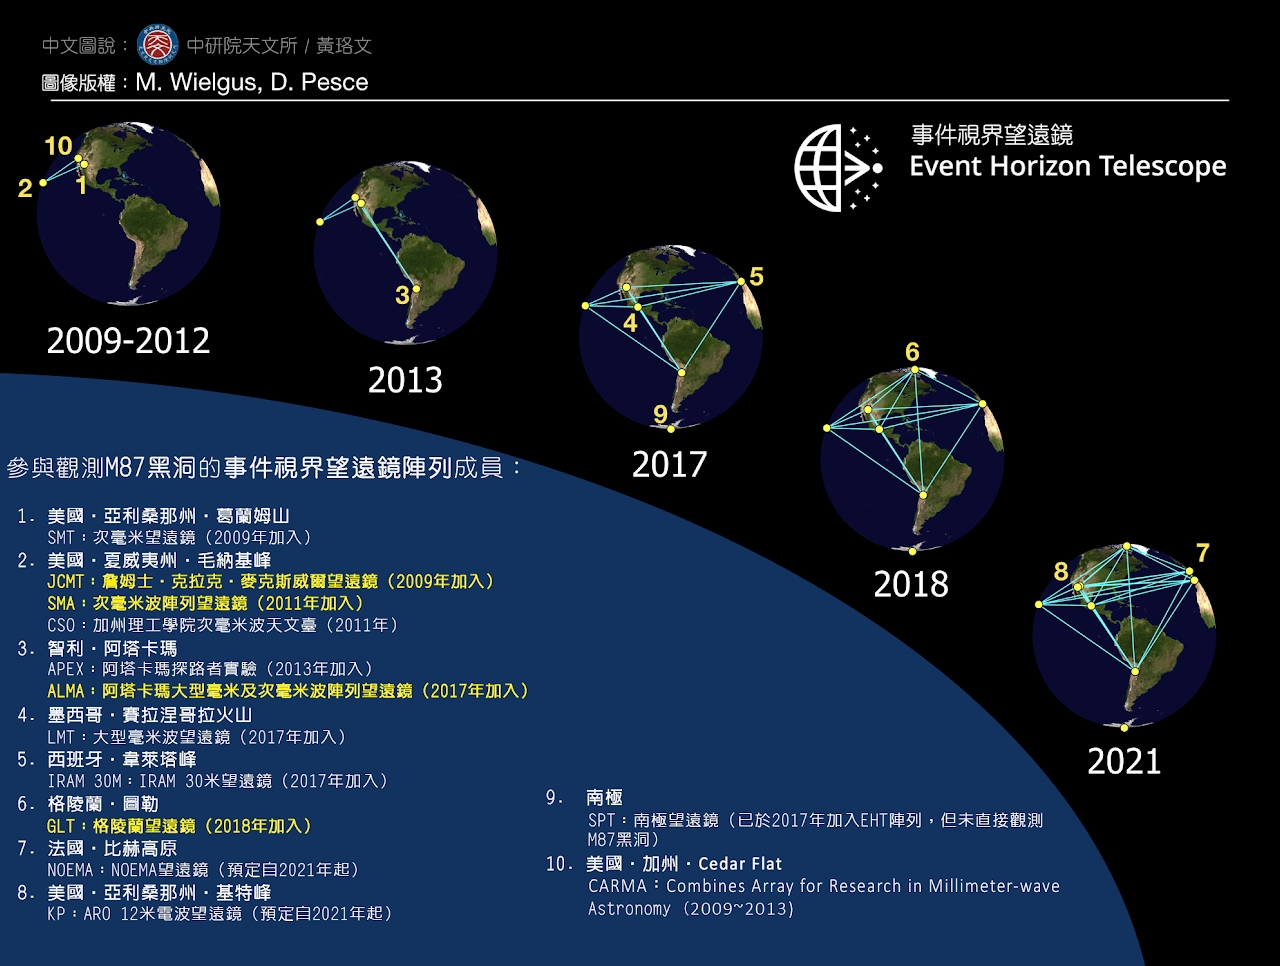 從 2009 年之後，事件視界望遠鏡的天線成員數量陸續增加，臺灣目前總共貢獻了 4 座望遠鏡的營運與儀器技術。 資料來源│中研院天文所 